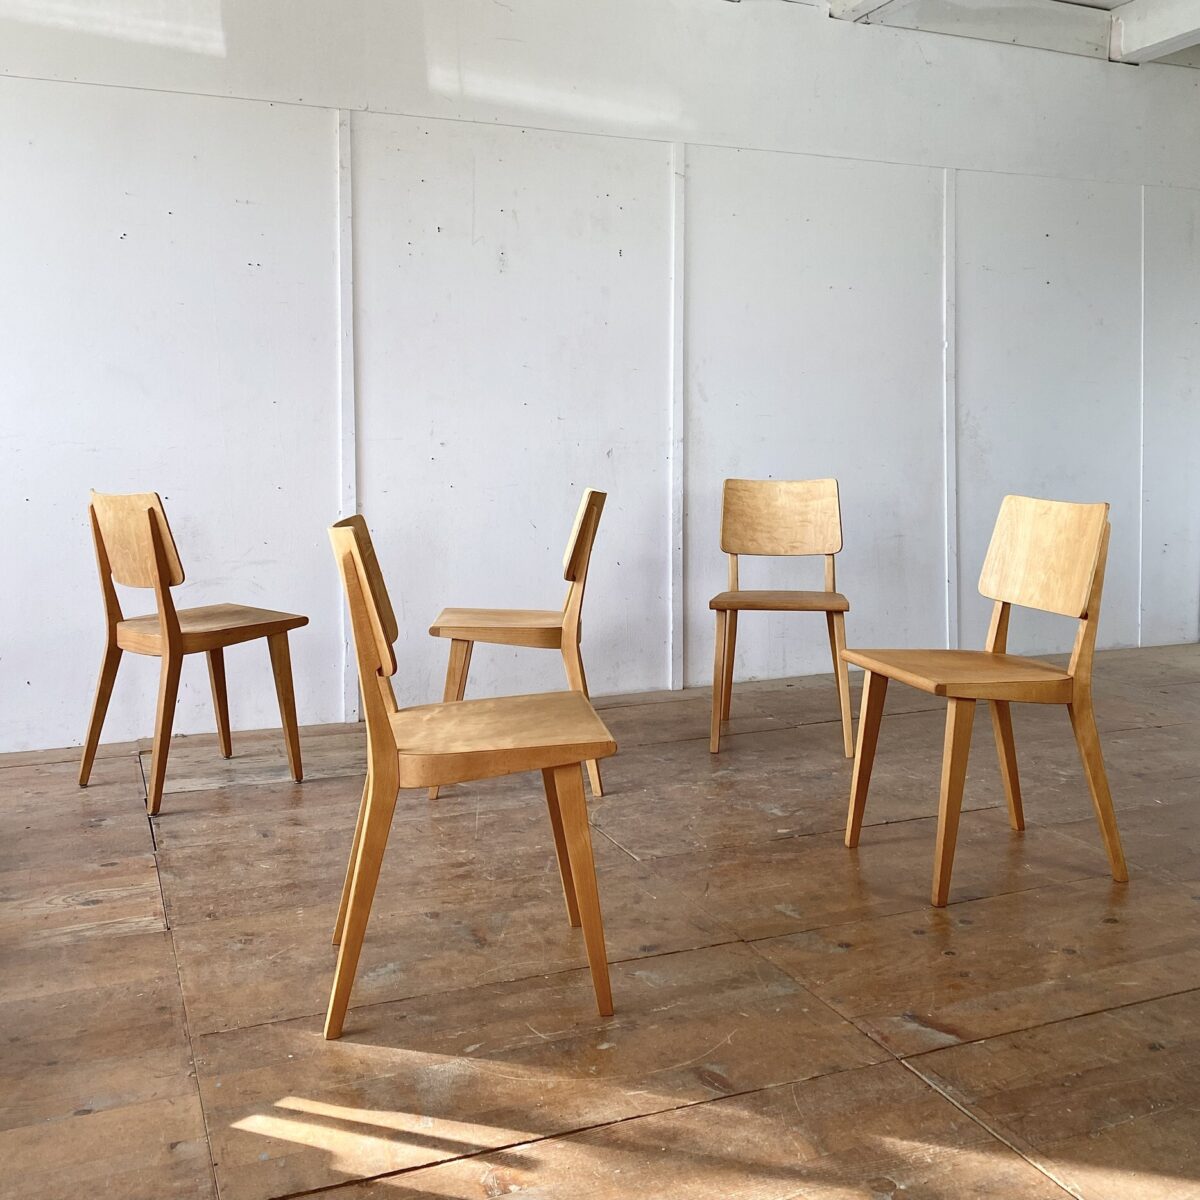 Deuxieme.shop Beizenstühle. 5 Horgen Glarus Stühle von 1962. Die Stühle sind in stabilem restaurierten Zustand, die Holzoberflächen sind geschliffen und geölt. Einer der Stühle hat etwas mehr Patina als die anderen, der wäre auch separat zu haben, die anderen werden im Set verkauft. Der Preis gilt fürs 5er Set. Die Stühle sind aus Buchenholz Dampfgebogen, Sitz und Lehne aus Birkensperrholz formverleimt. 